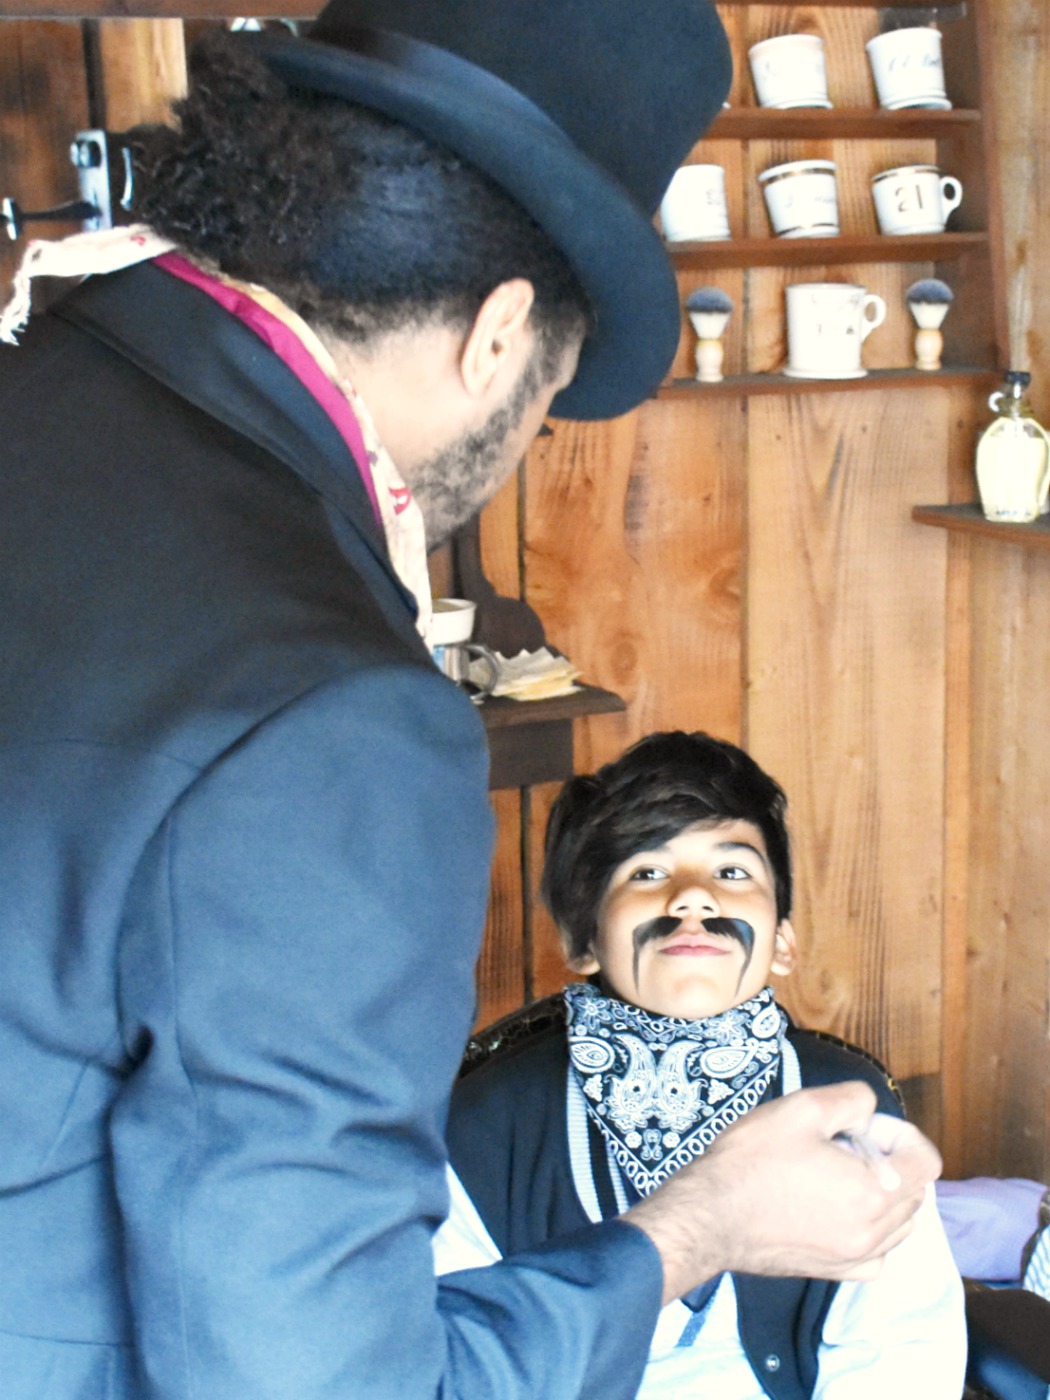 Getting a mustache at Knott's Berry Farm - livingmividaloca.com